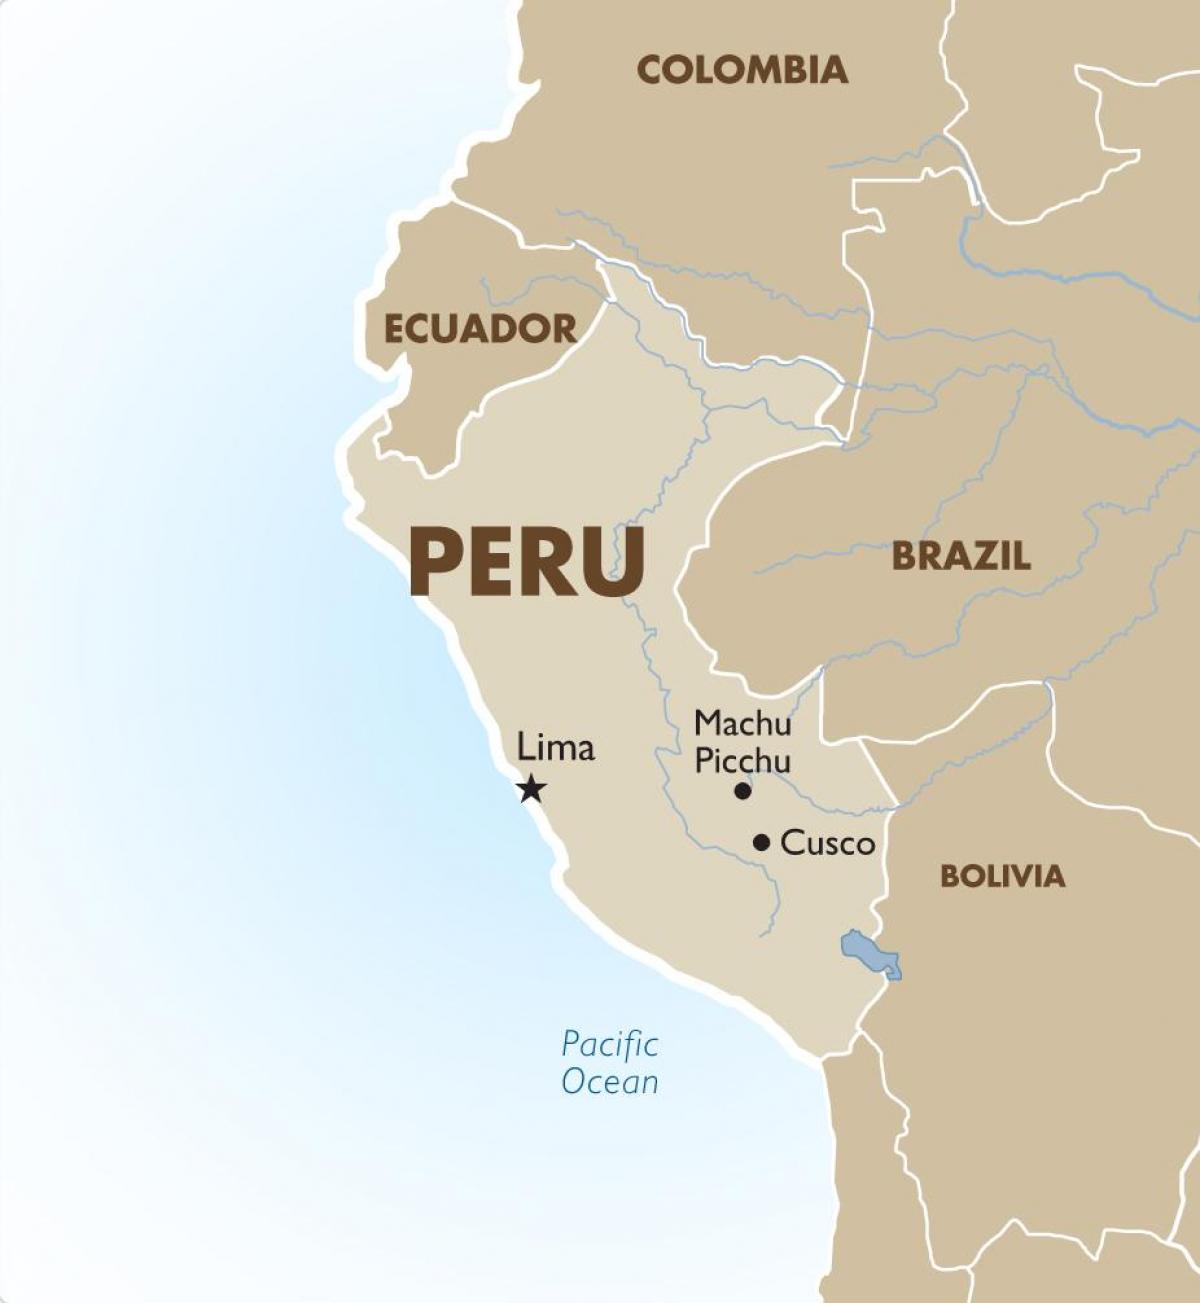 mapa Peruu i okolne države